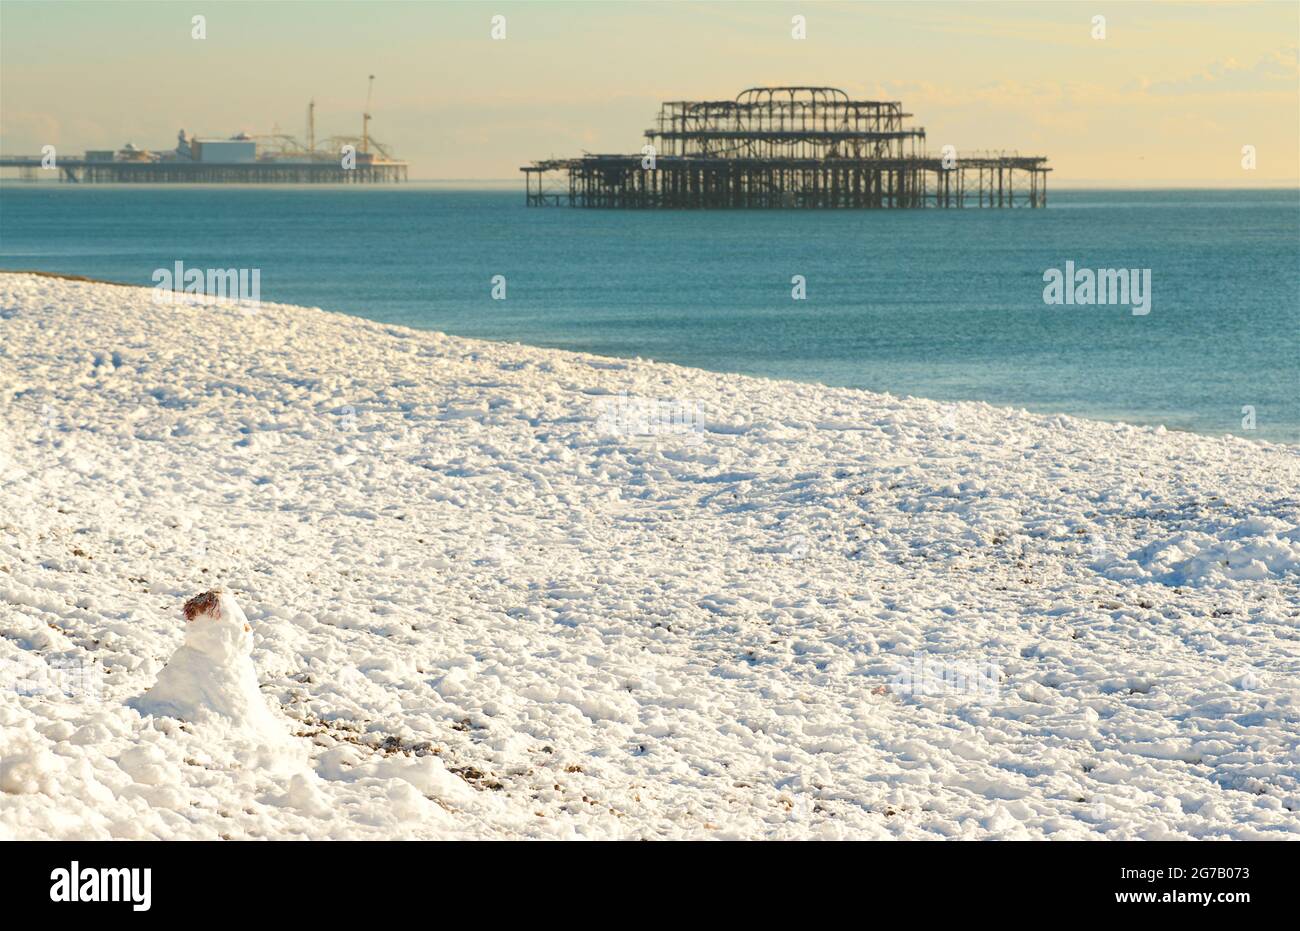 Neige sur la plage, Brighton, Angleterre, avec le Palace Pier et les vestiges de la jetée ouest derrière. Concentration sur Snowman sur la plage Banque D'Images